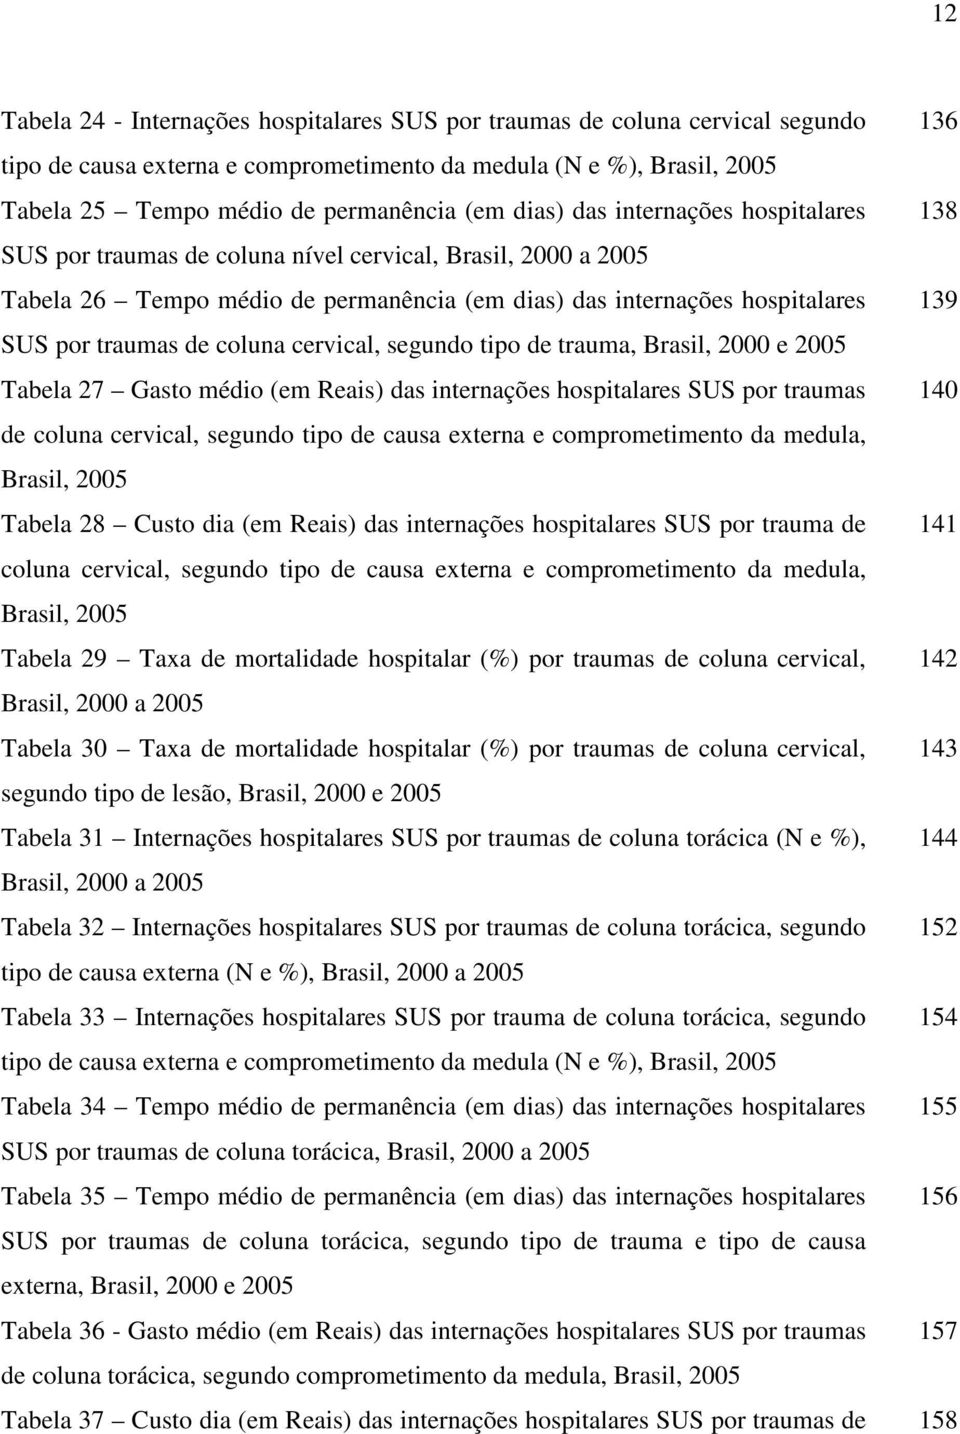 coluna cervical, segundo tipo de trauma, Brasil, 2000 e 2005 Tabela 27 Gasto médio (em Reais) das internações hospitalares SUS por traumas 140 de coluna cervical, segundo tipo de causa externa e